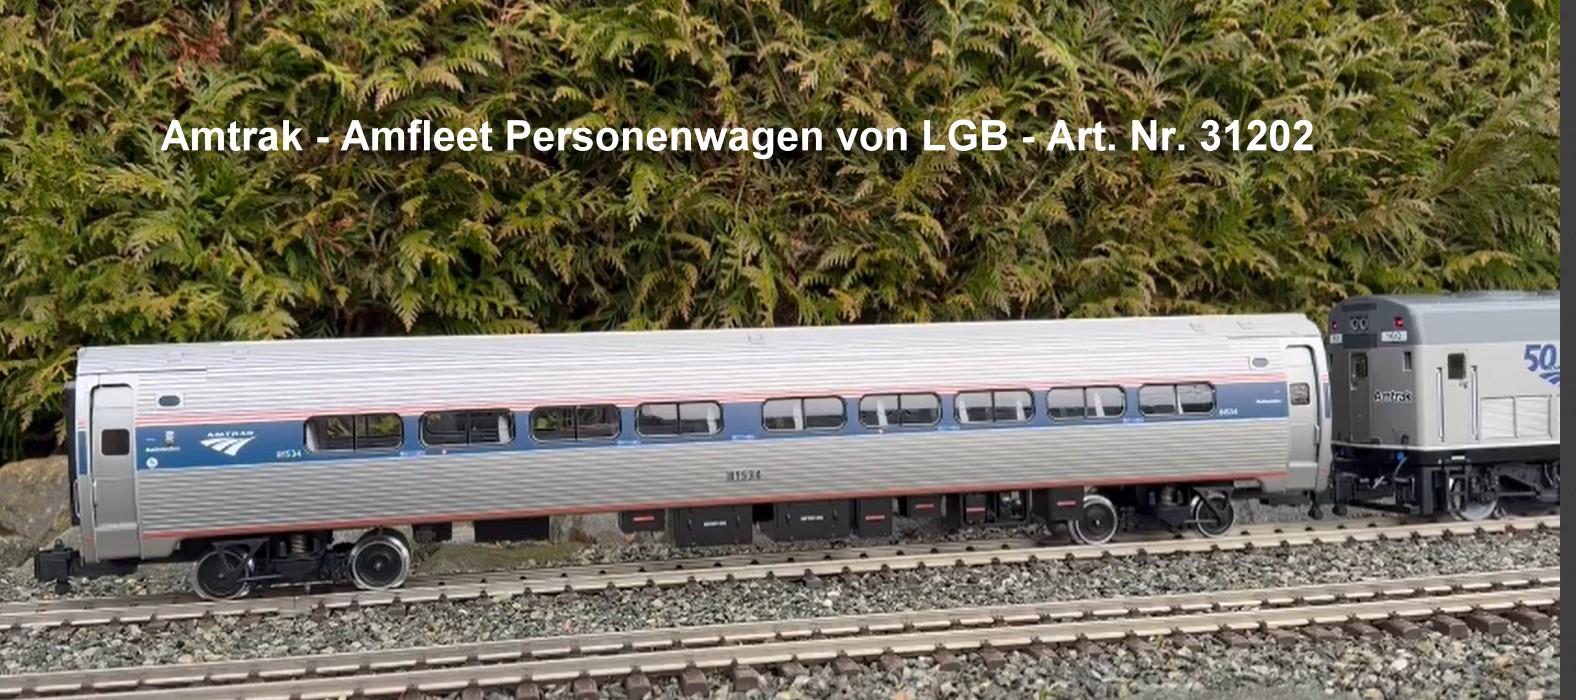 Hier knnen Sie den Kurzfilm von Hendrik Hauschild zum Amfleet Personenwagen LGB Art. Nr. 31202 ansehen. Wie immer auf das Bild klicken! 